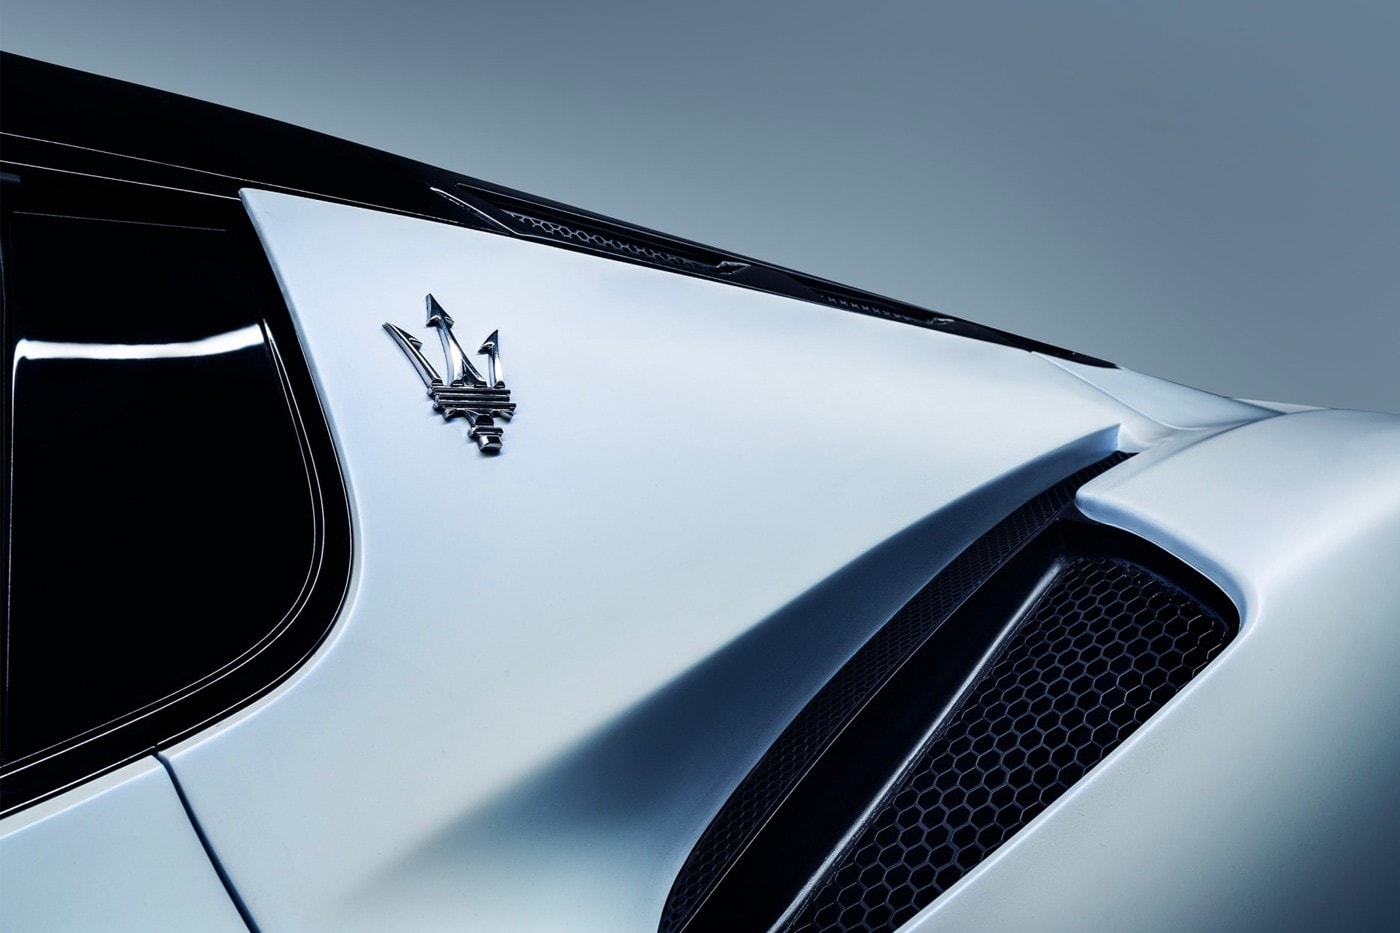 Maserati 正式發表全新超跑車型 MC20 